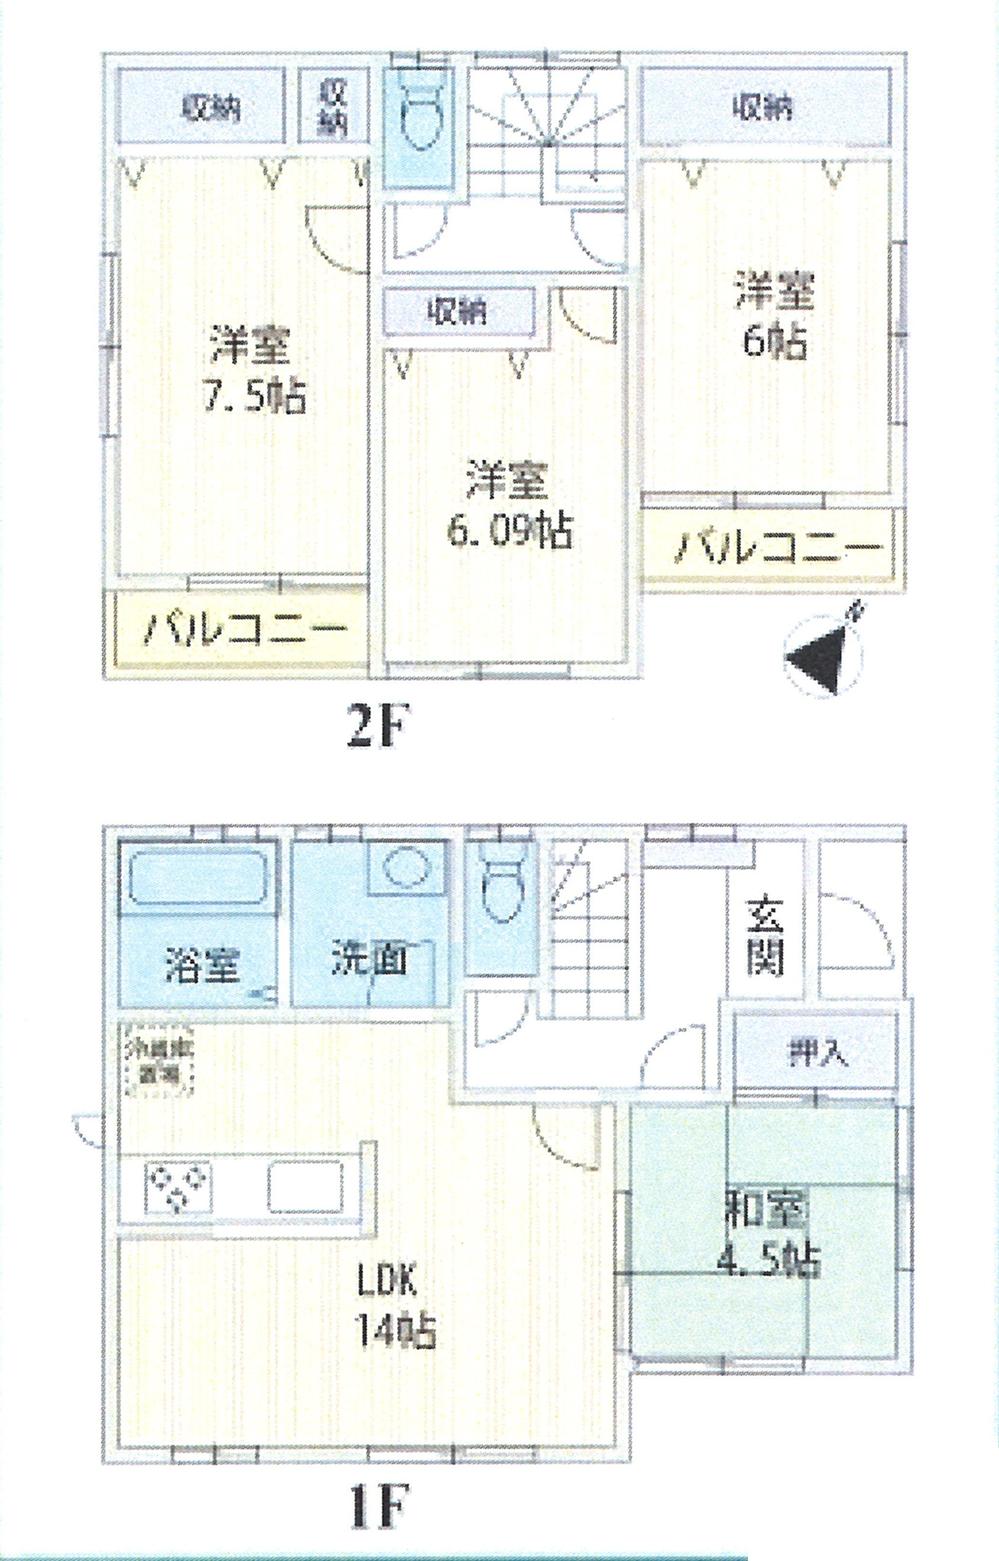 Floor plan. 20.8 million yen, 4LDK, Land area 120.07 sq m , Building area 92.73 sq m